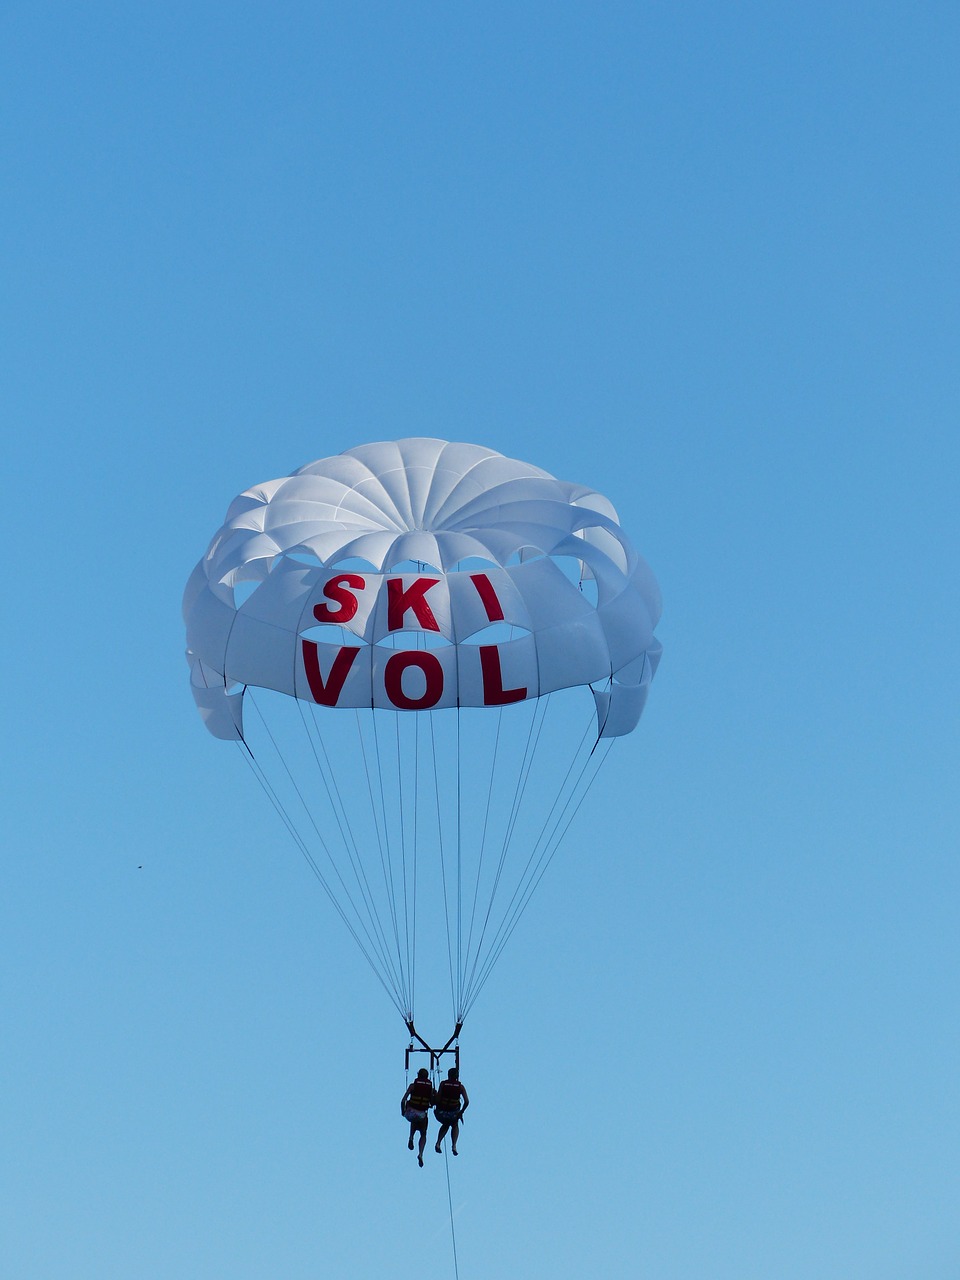 parasailing controllable parachuting high free photo